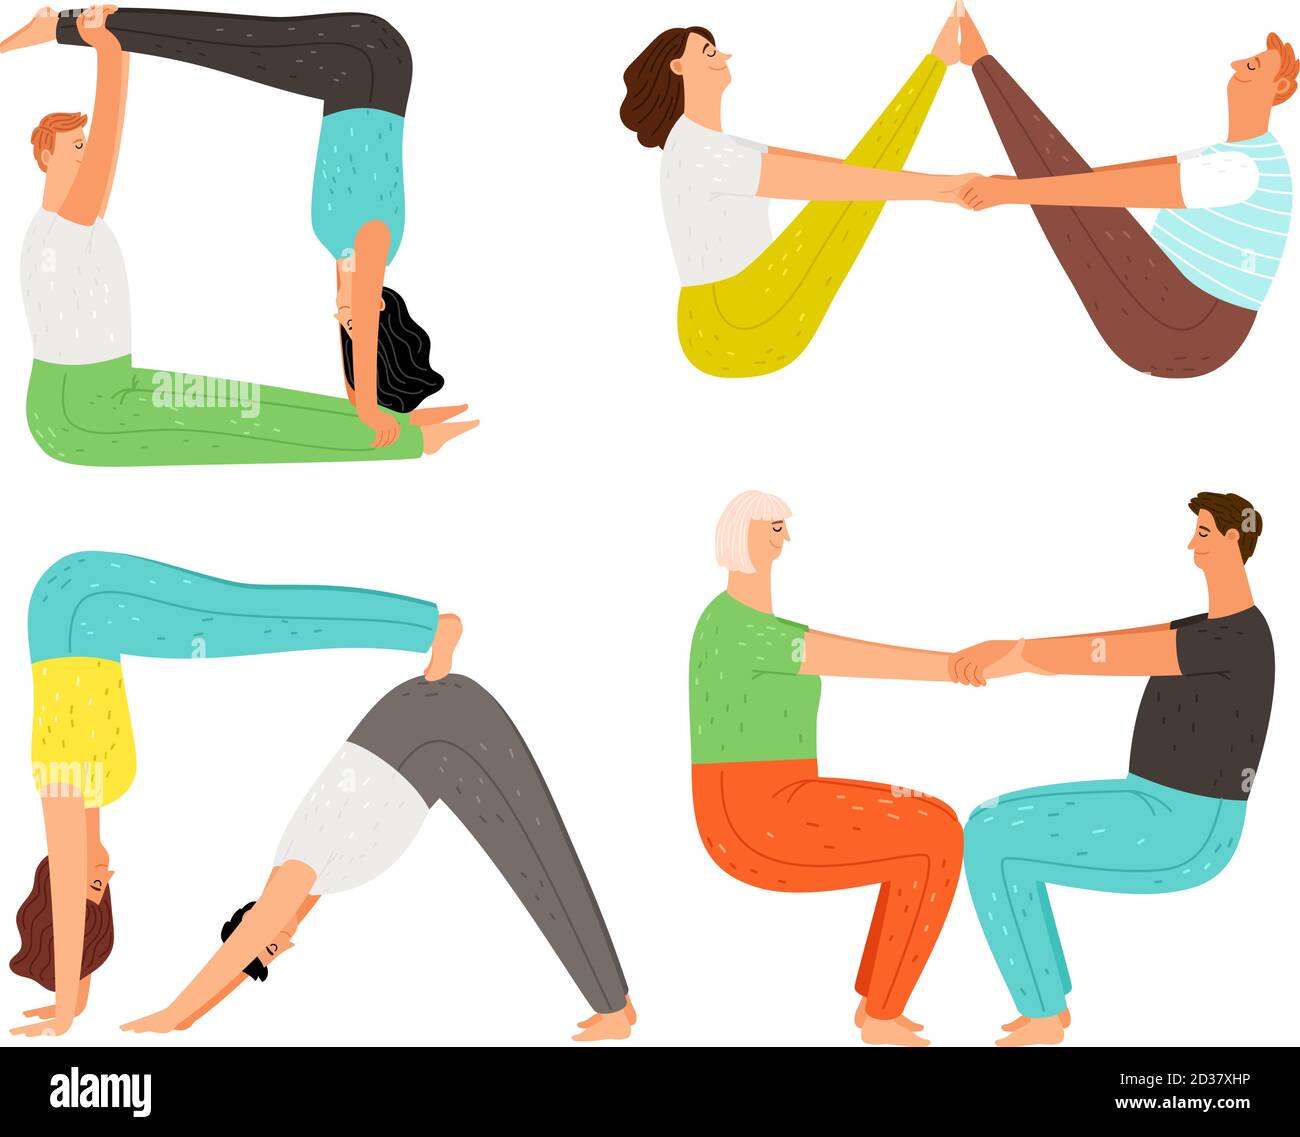 10 Best Yoga Poses to Boost Fertility in Men & Women